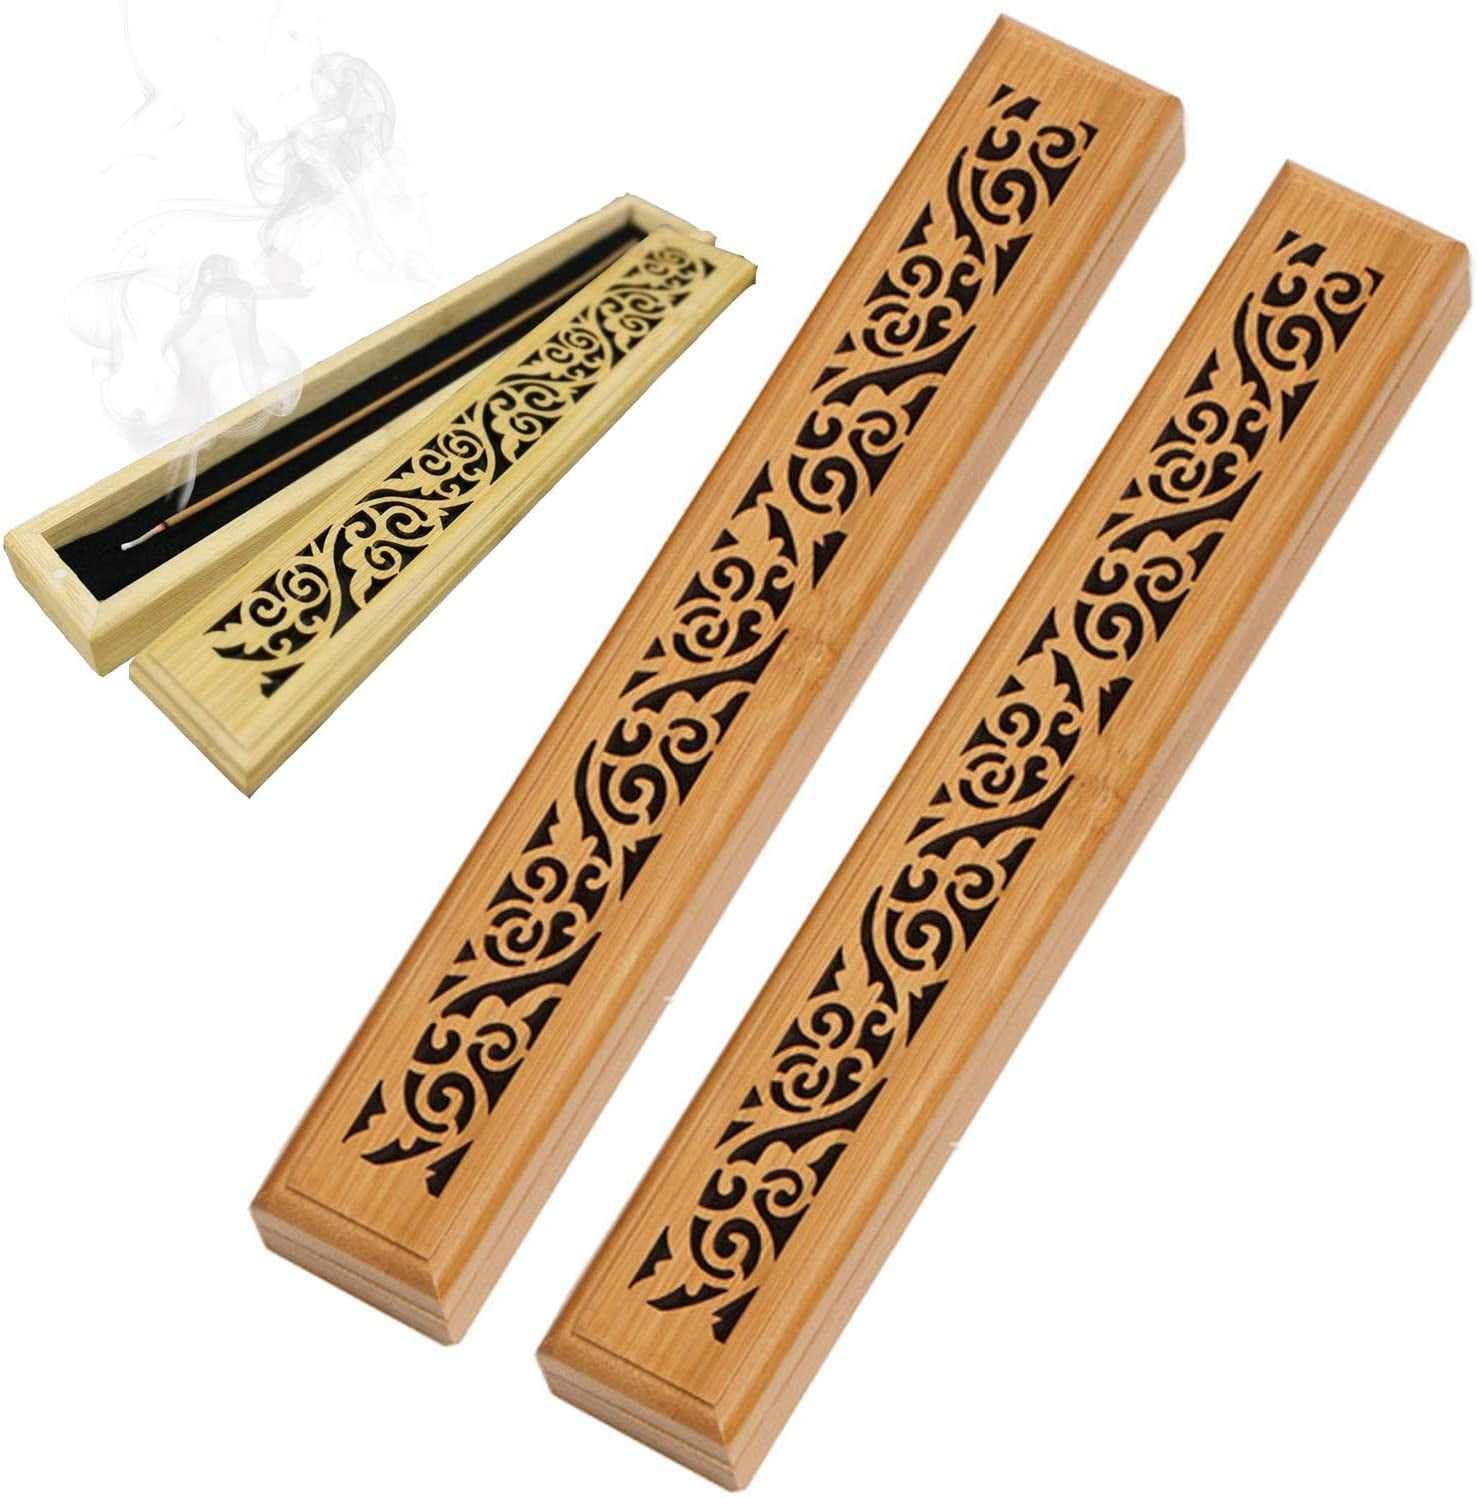 12 Elephant Wooden Incense Burner Holder Ash Catcher for Sticks you pick 1,3,6